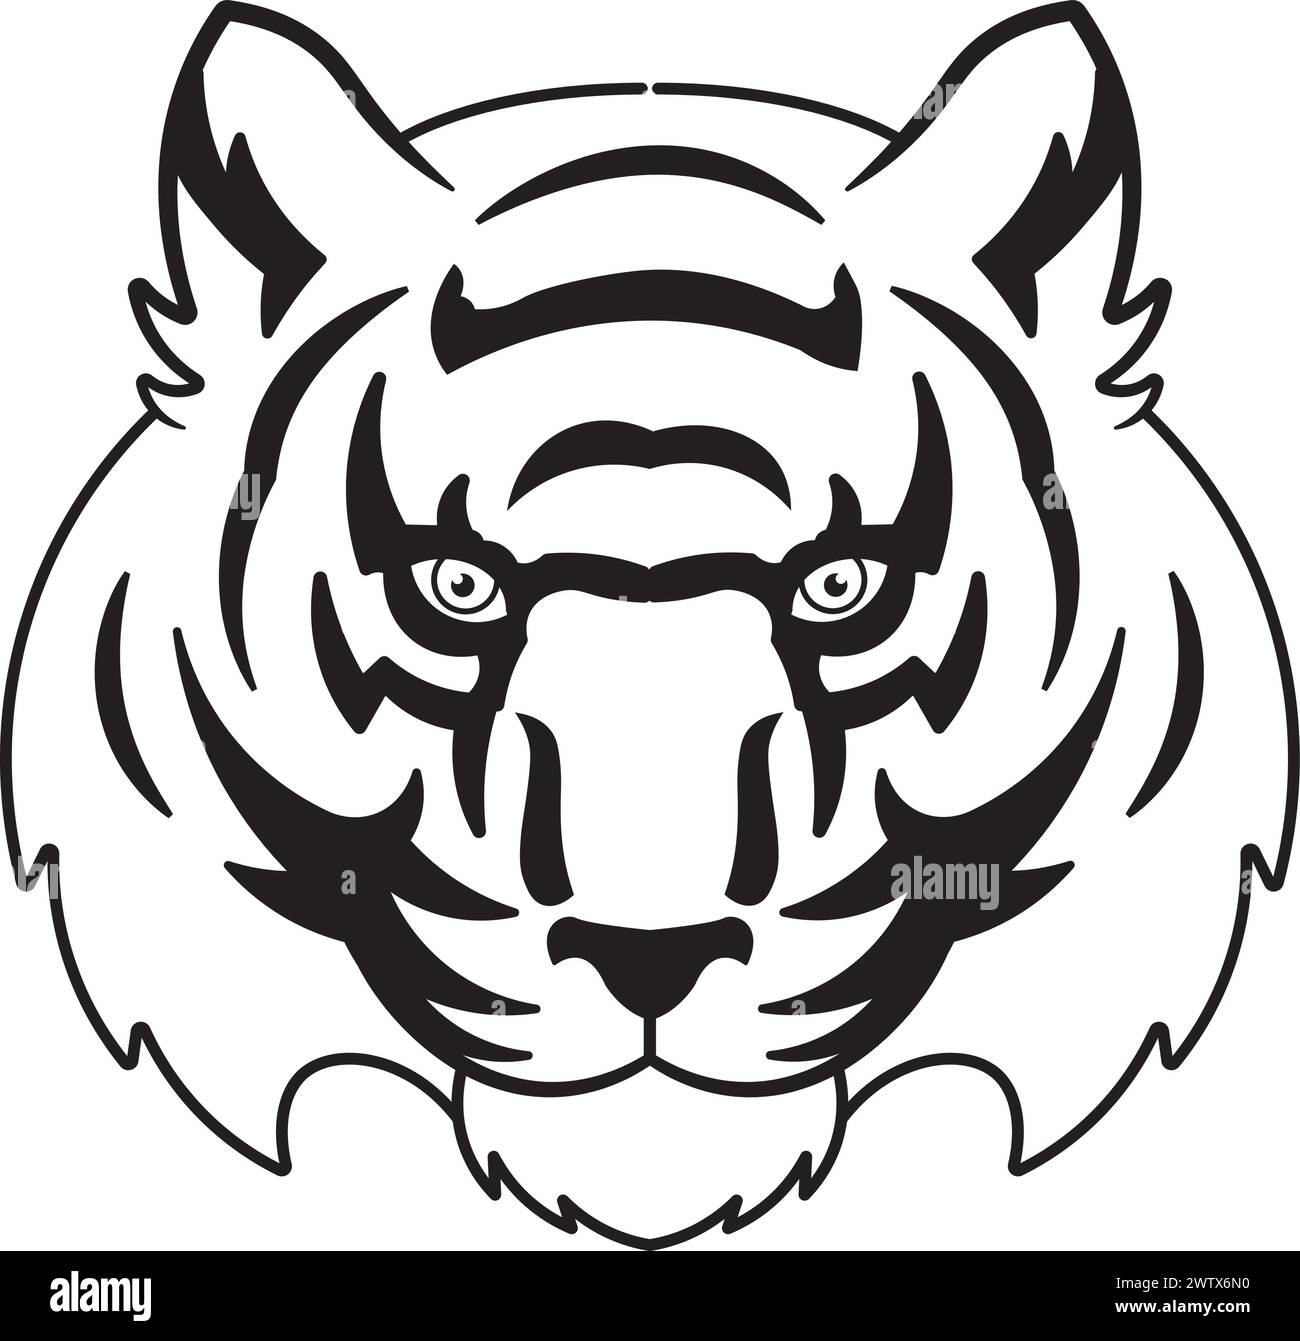 Schwarz-weißes Tigergesicht Stock Vektor